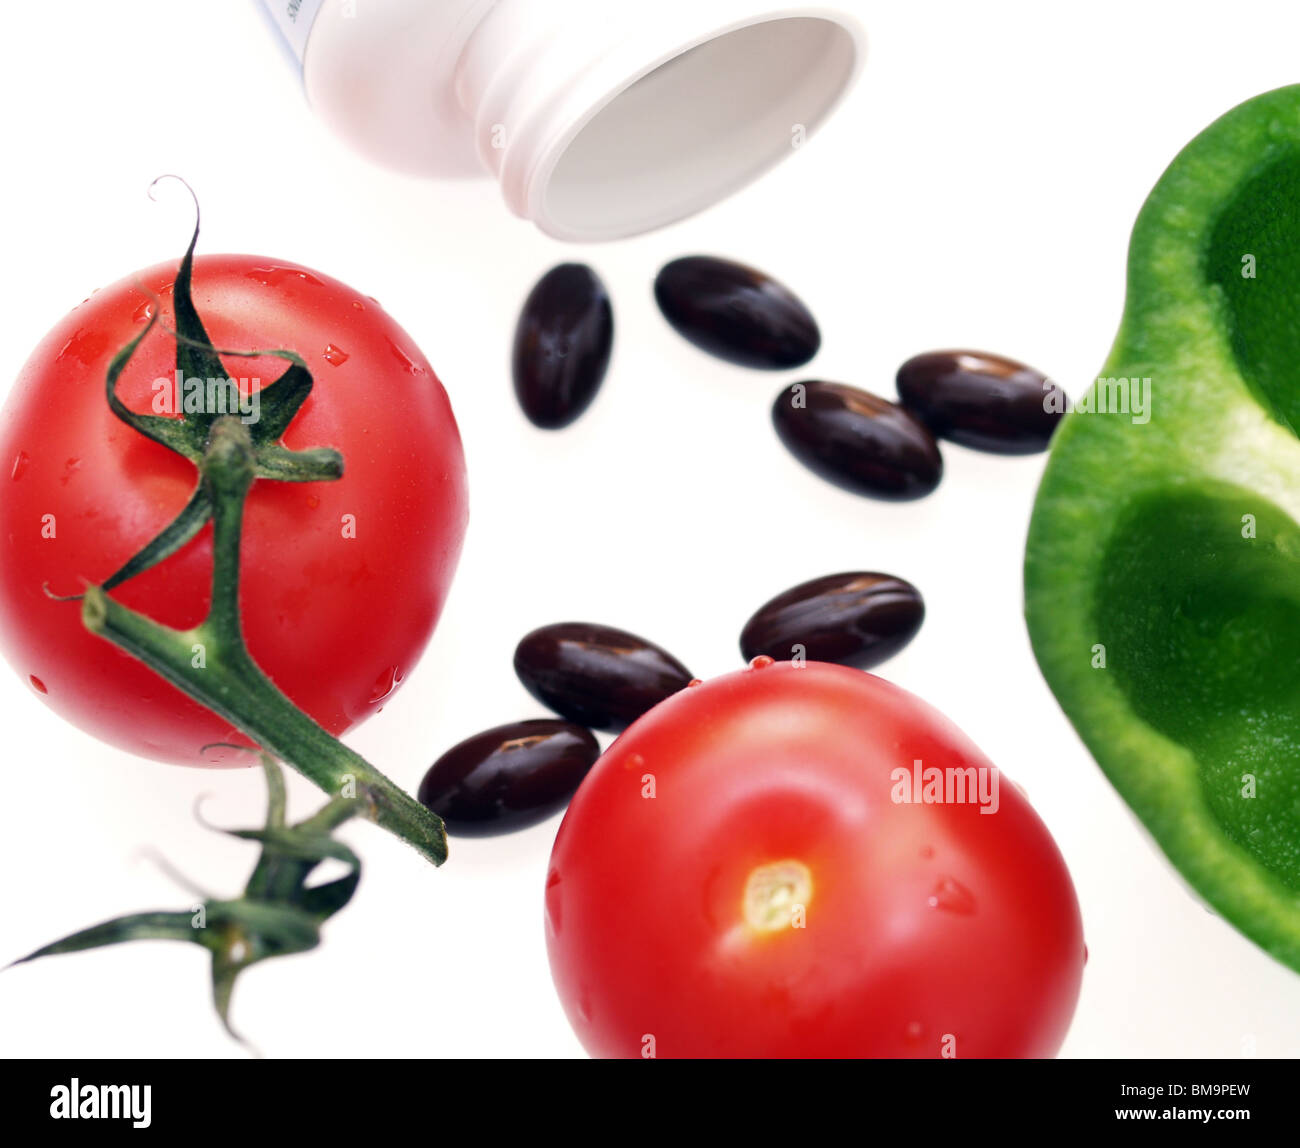 Vitamin Pillen mit Tomaten und Paprika. Pillen oder frisches Gemüse für Ernährung. Vergleich vitamin Pillen v frische Lebensmittel. Stockfoto